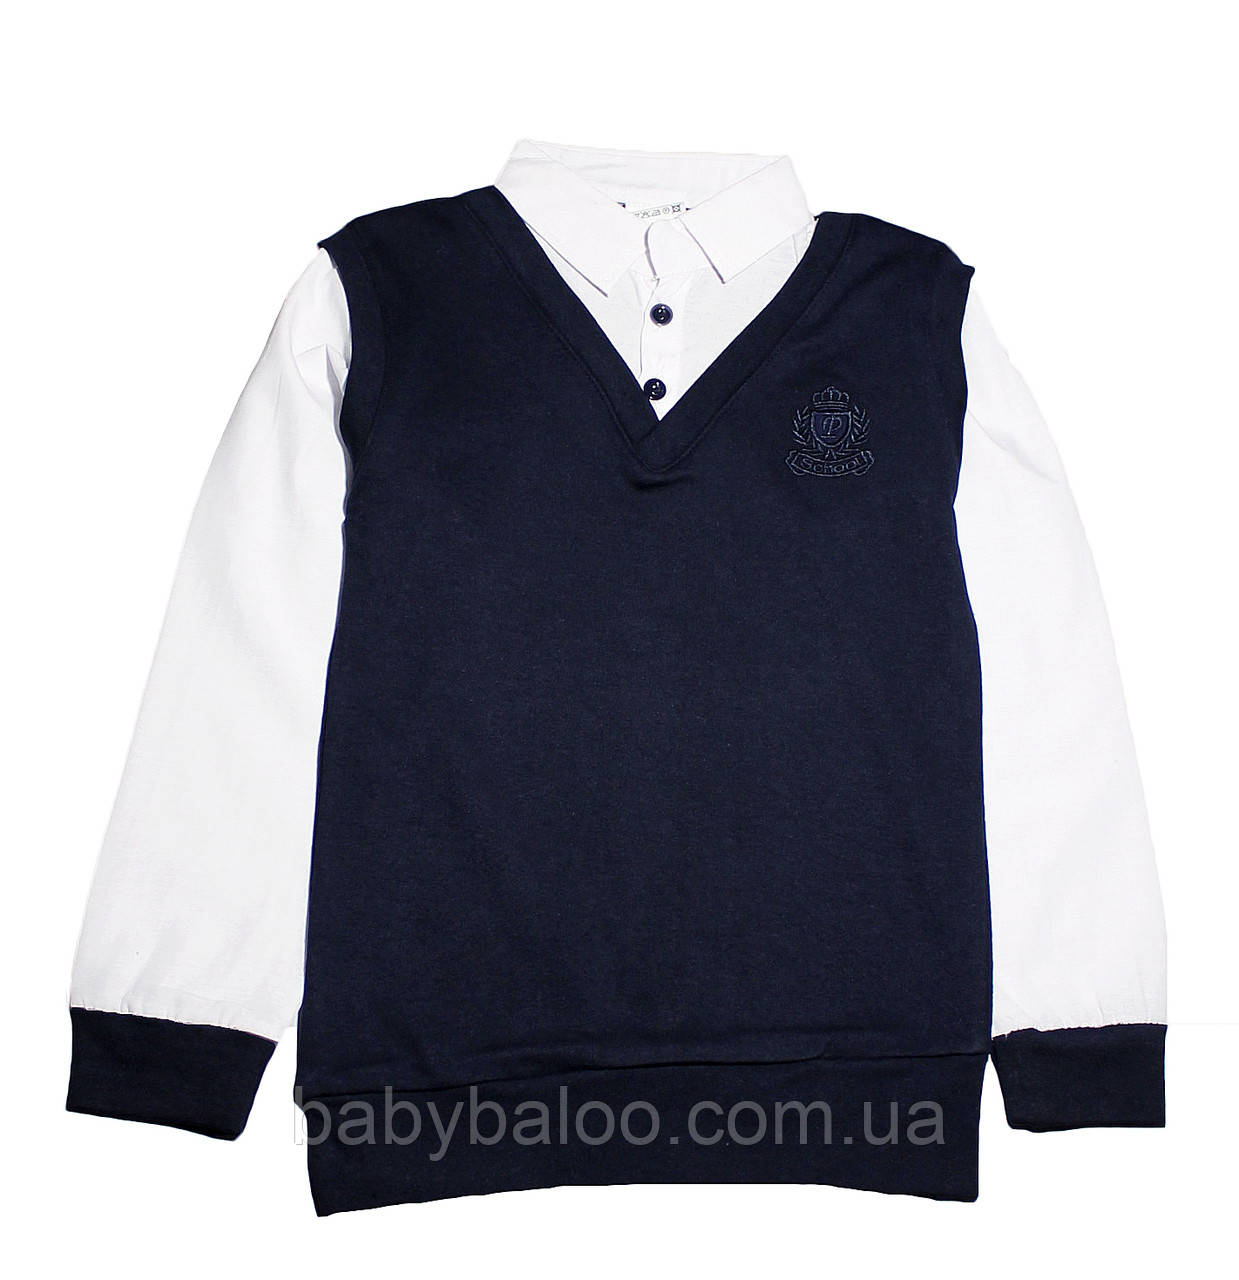 Сорочка для хлопчика імітація пуловер білий воріт (від 6 до 14 років) - арт.1462365891